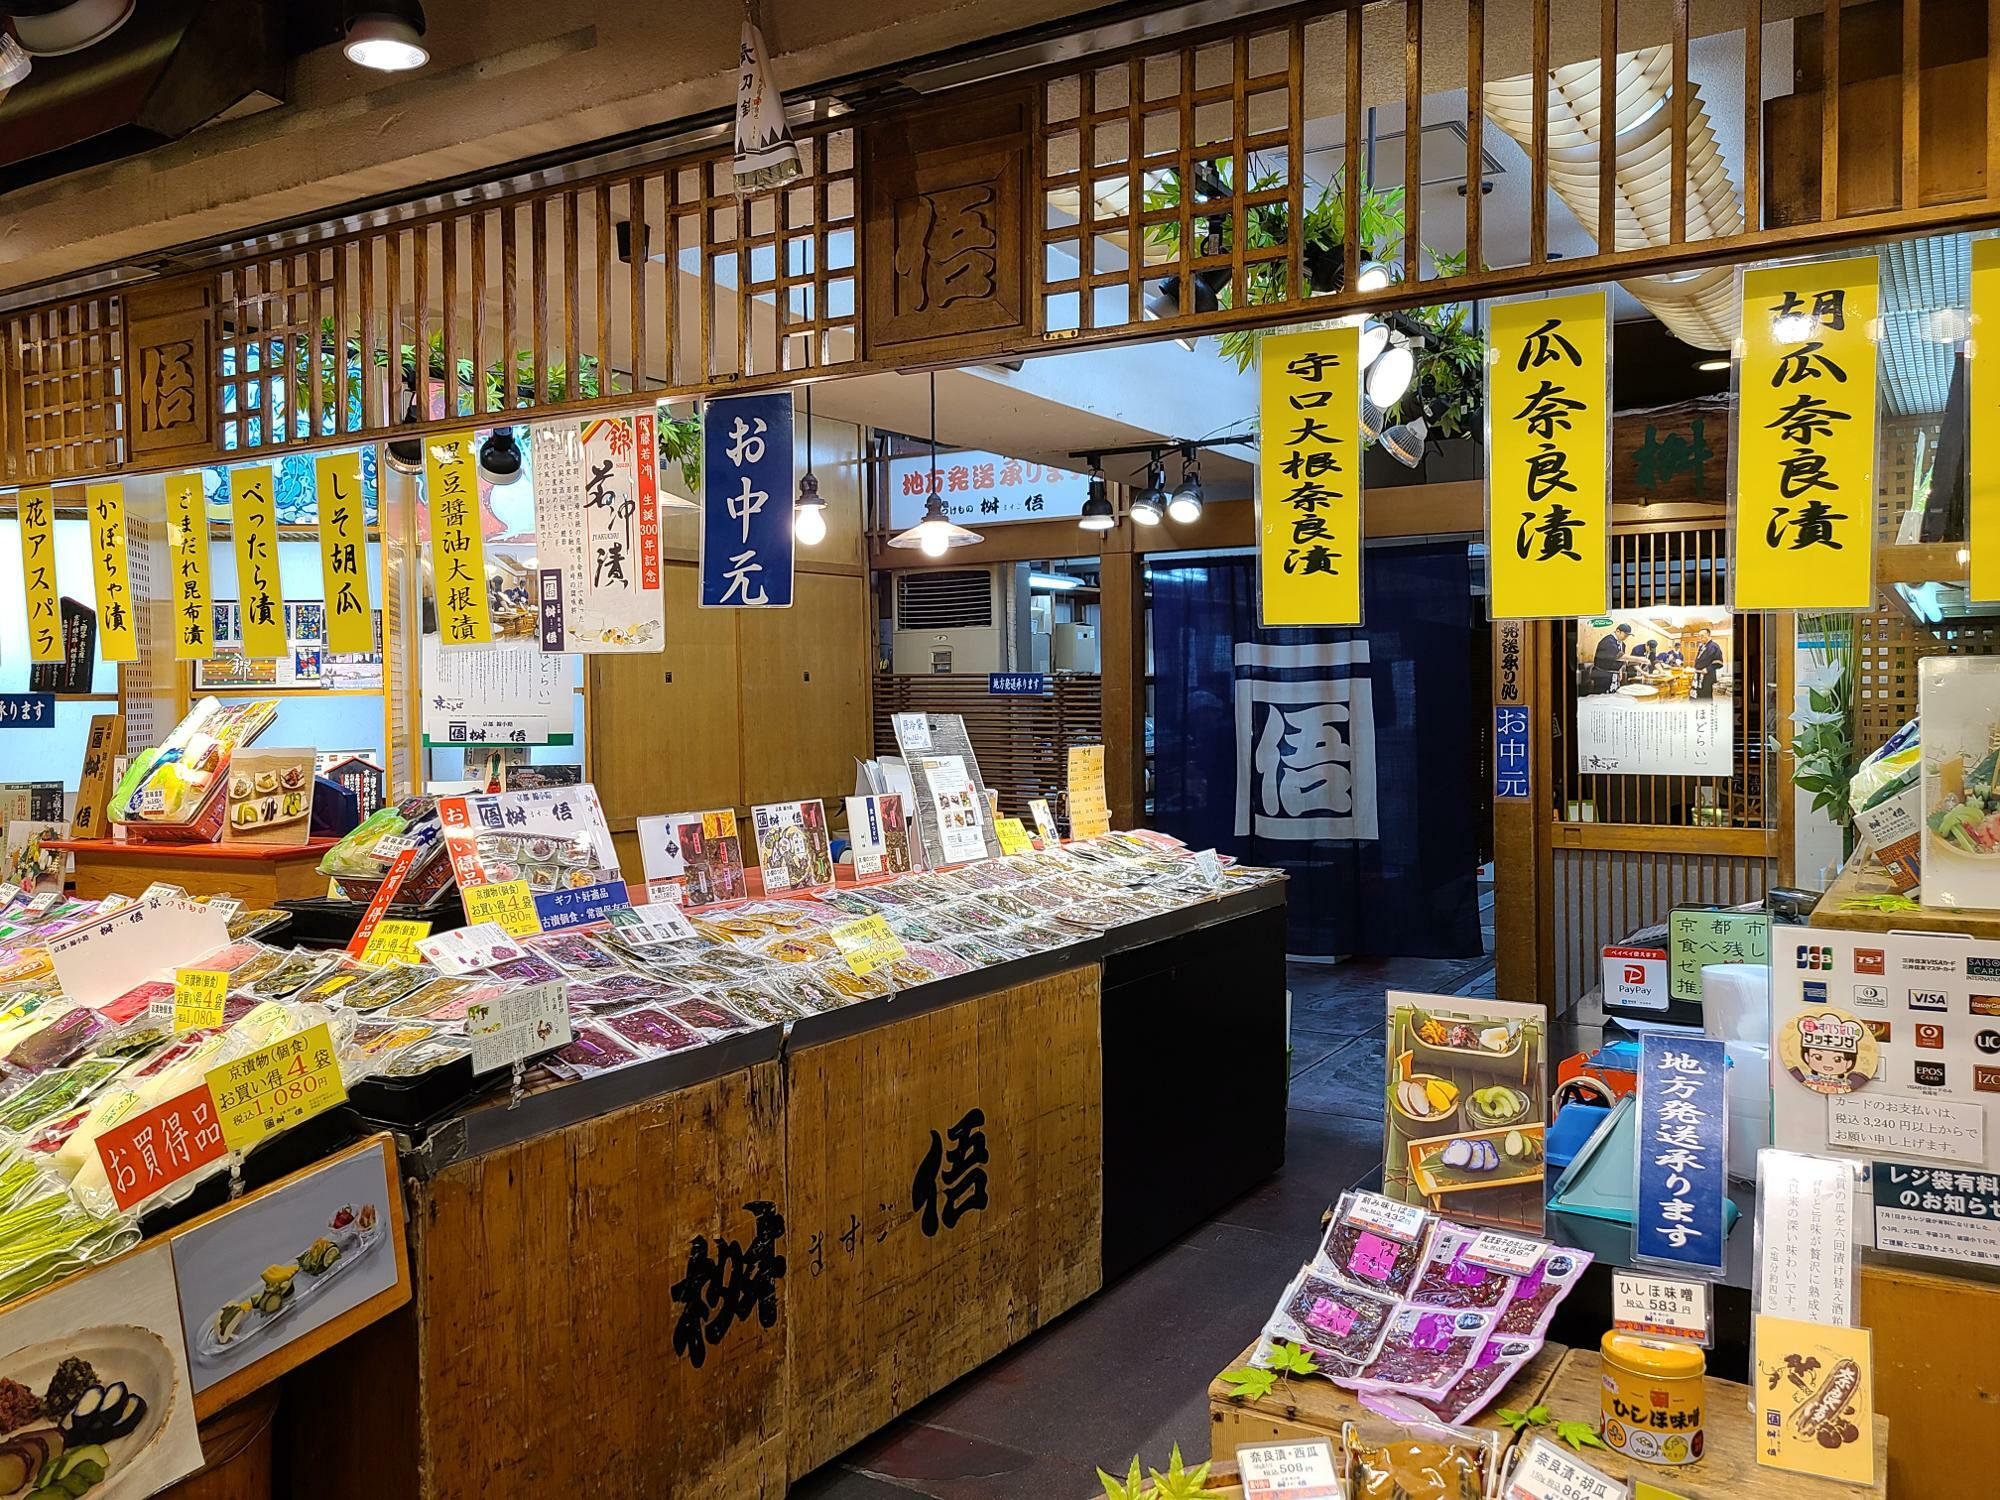 造り酒屋を経て、京漬物製造小売業としては、昭和5年以来、錦市場で営業を続ける「桝悟」